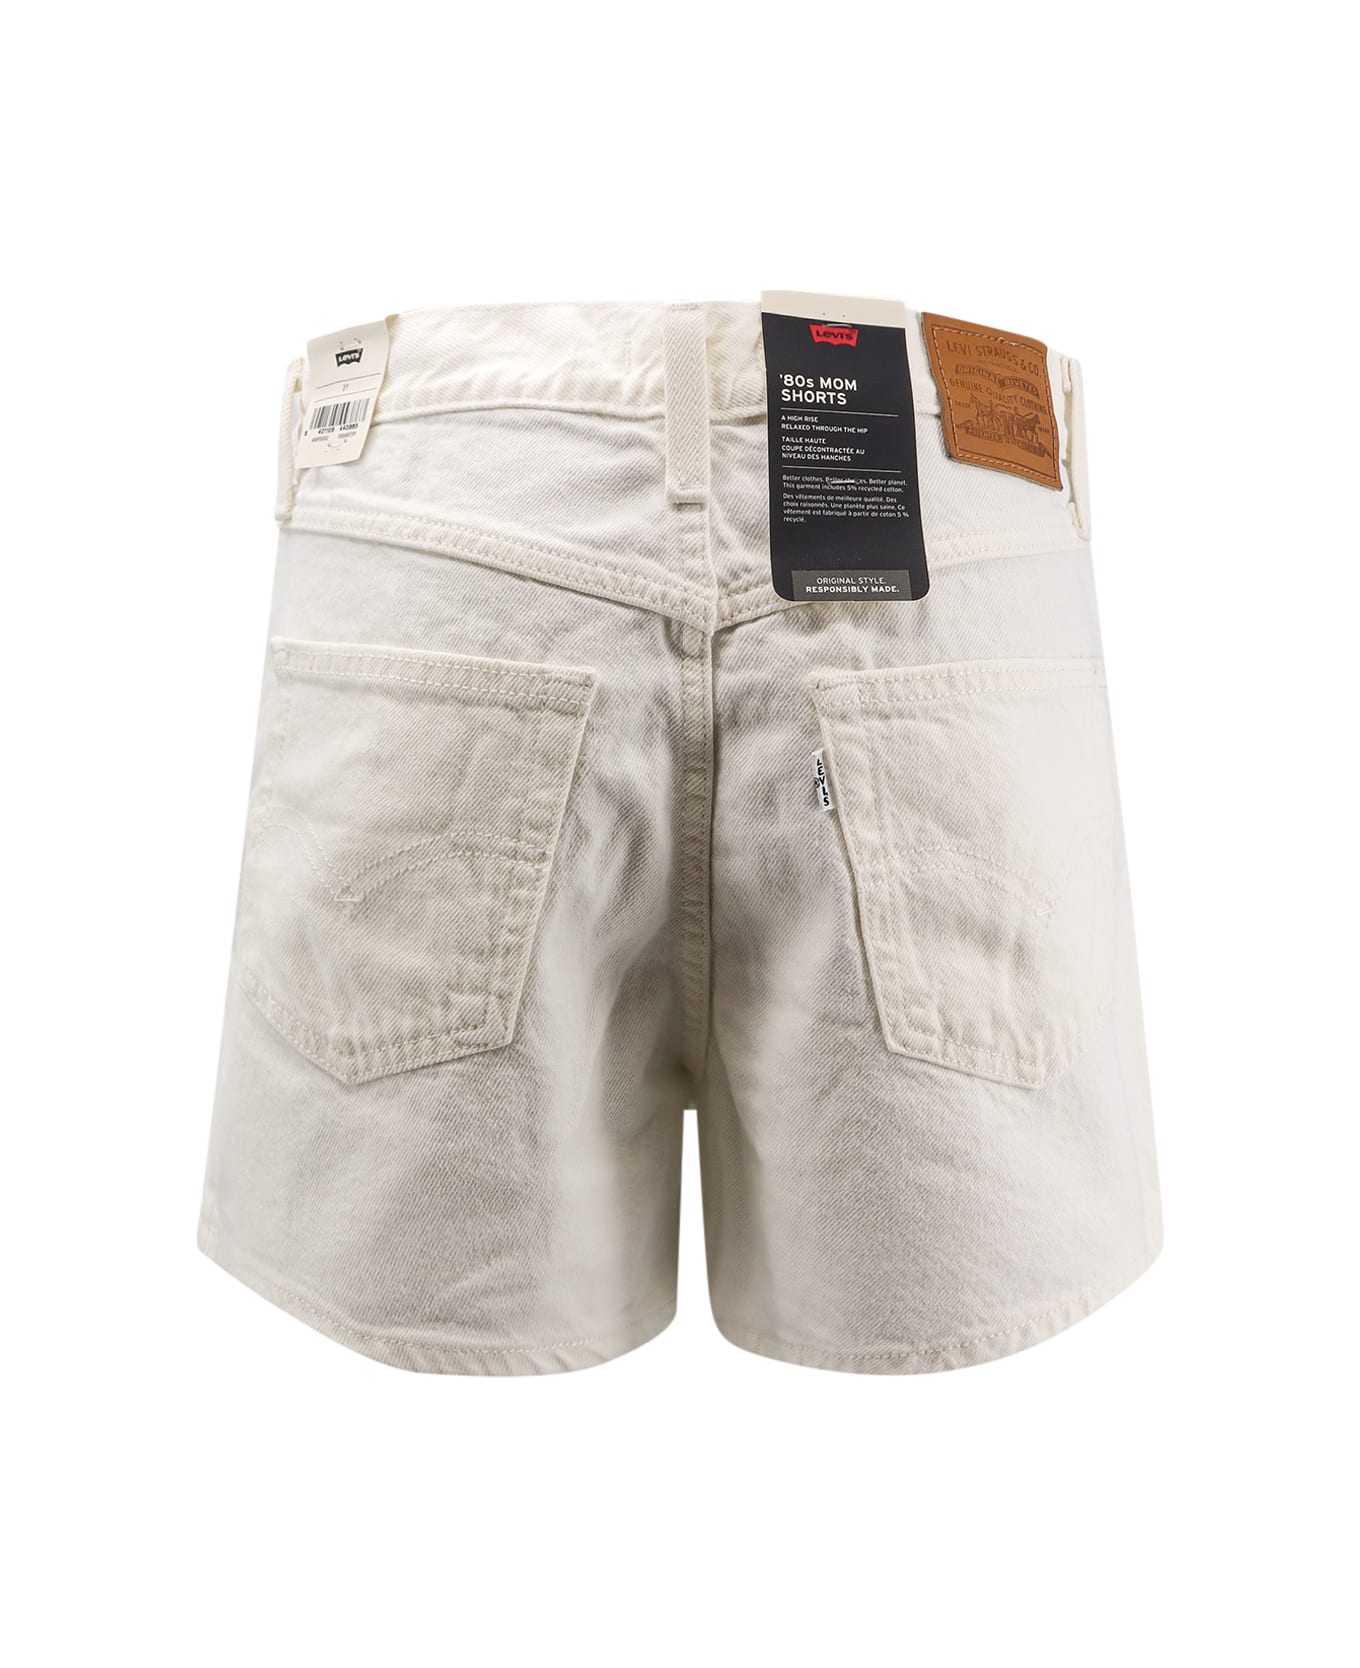 Levi's 80s Mom Shorts - White ショートパンツ